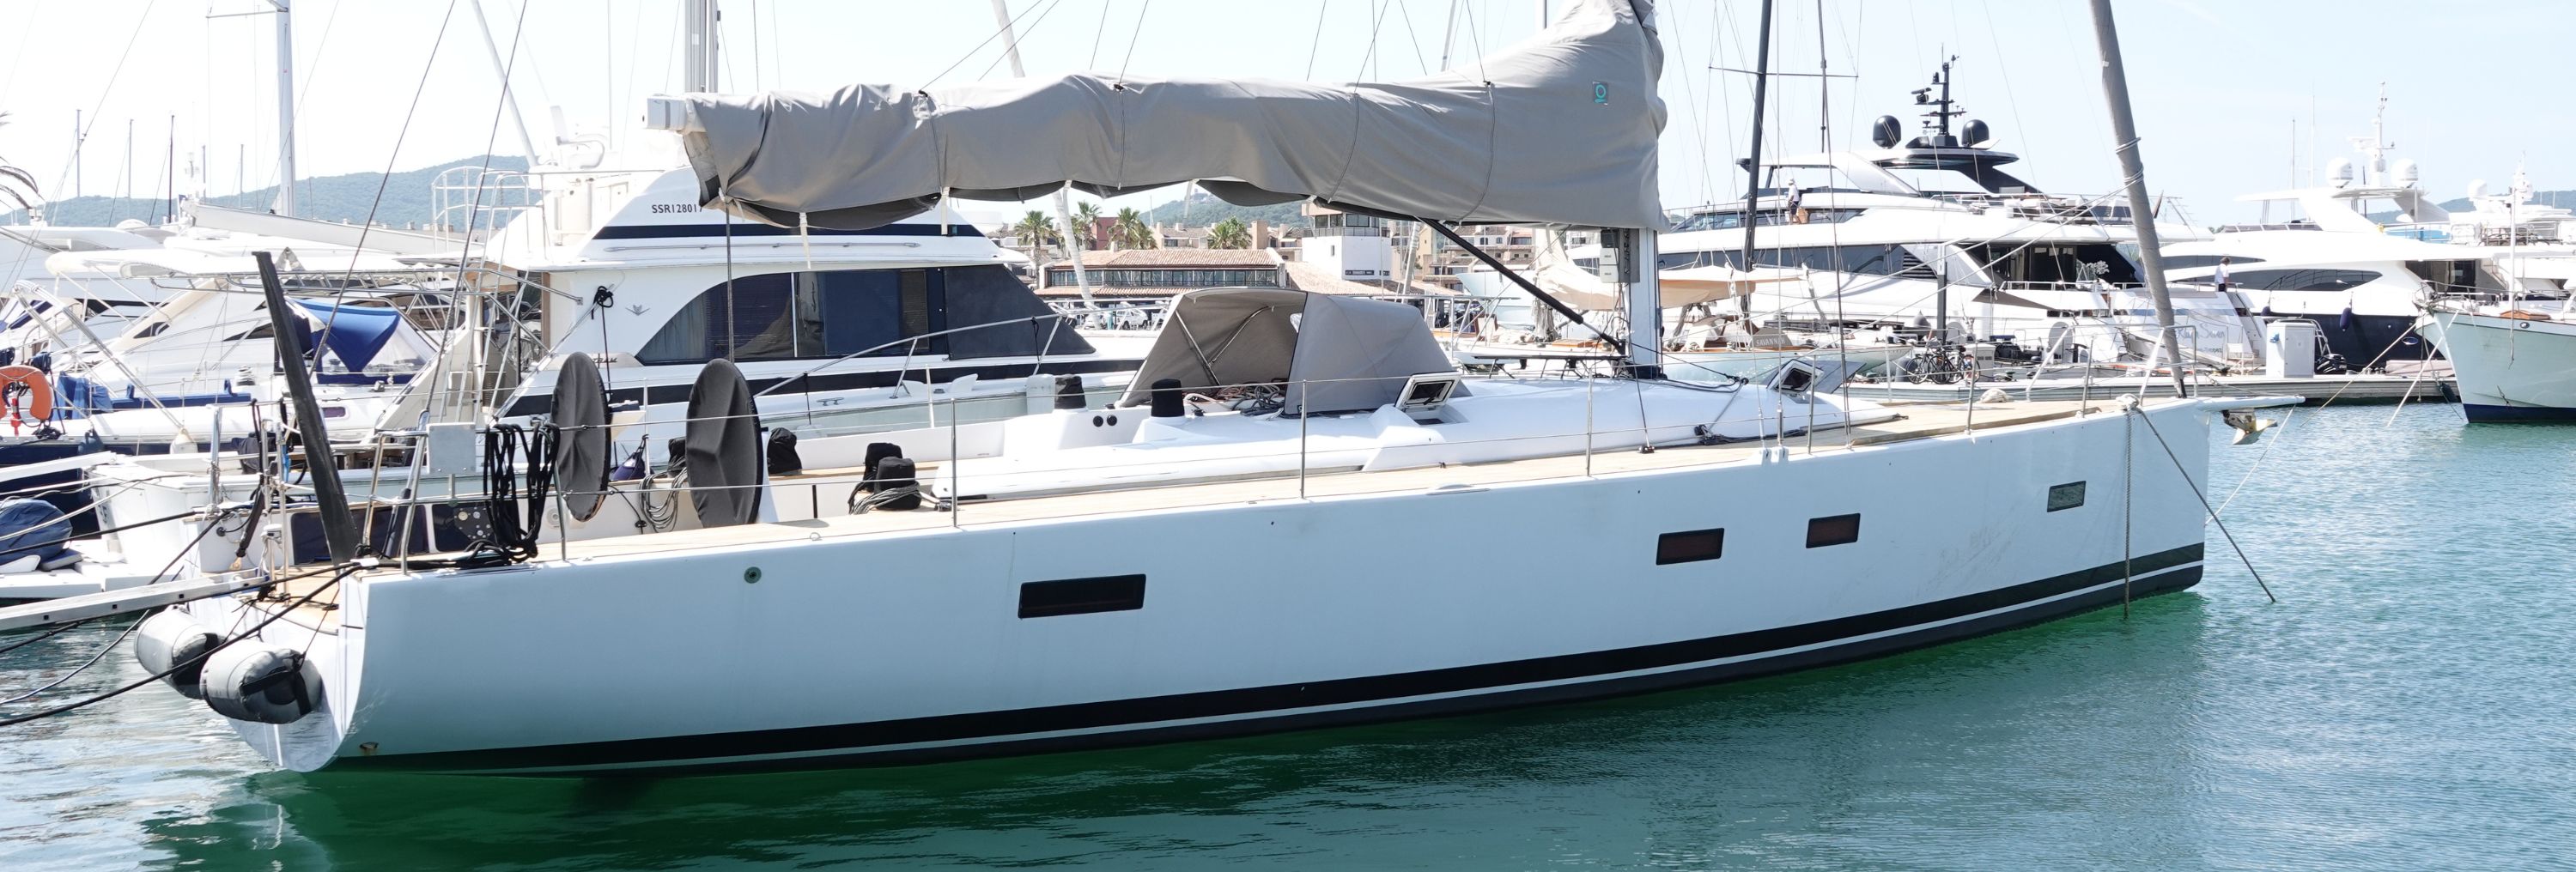 OSCAR 2: New Sailing Yacht for Sale